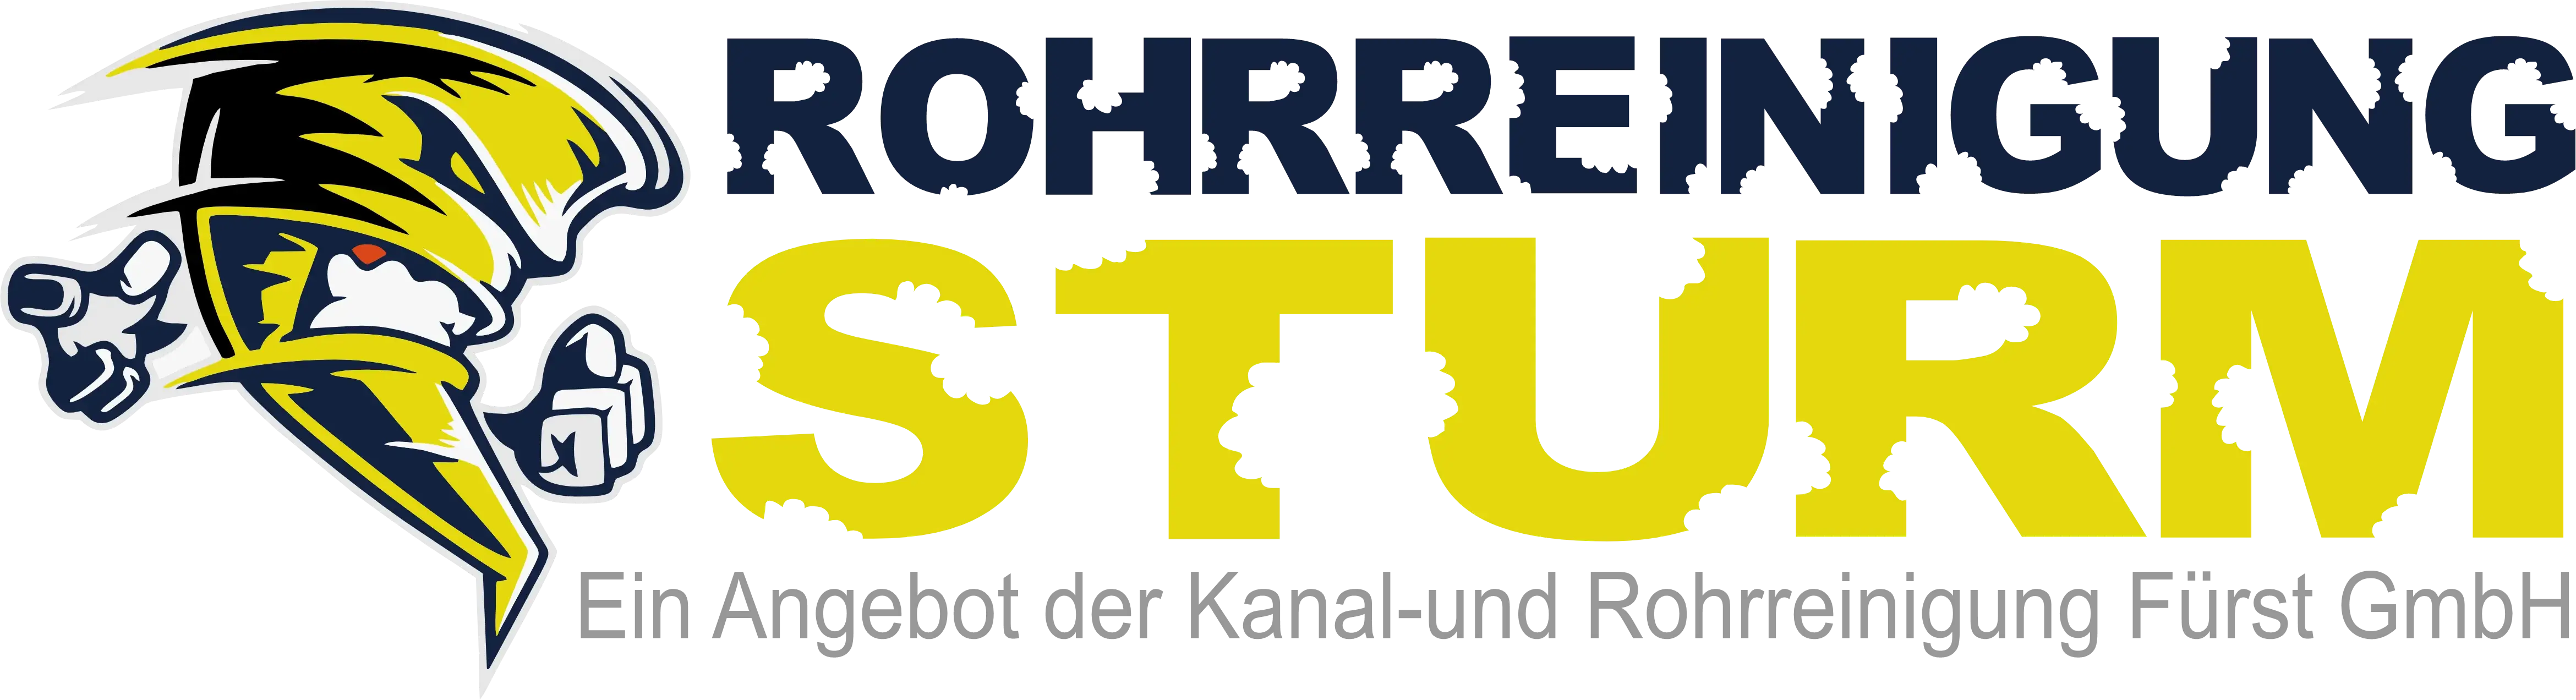 Rohrreinigung für kelsterbach Logo